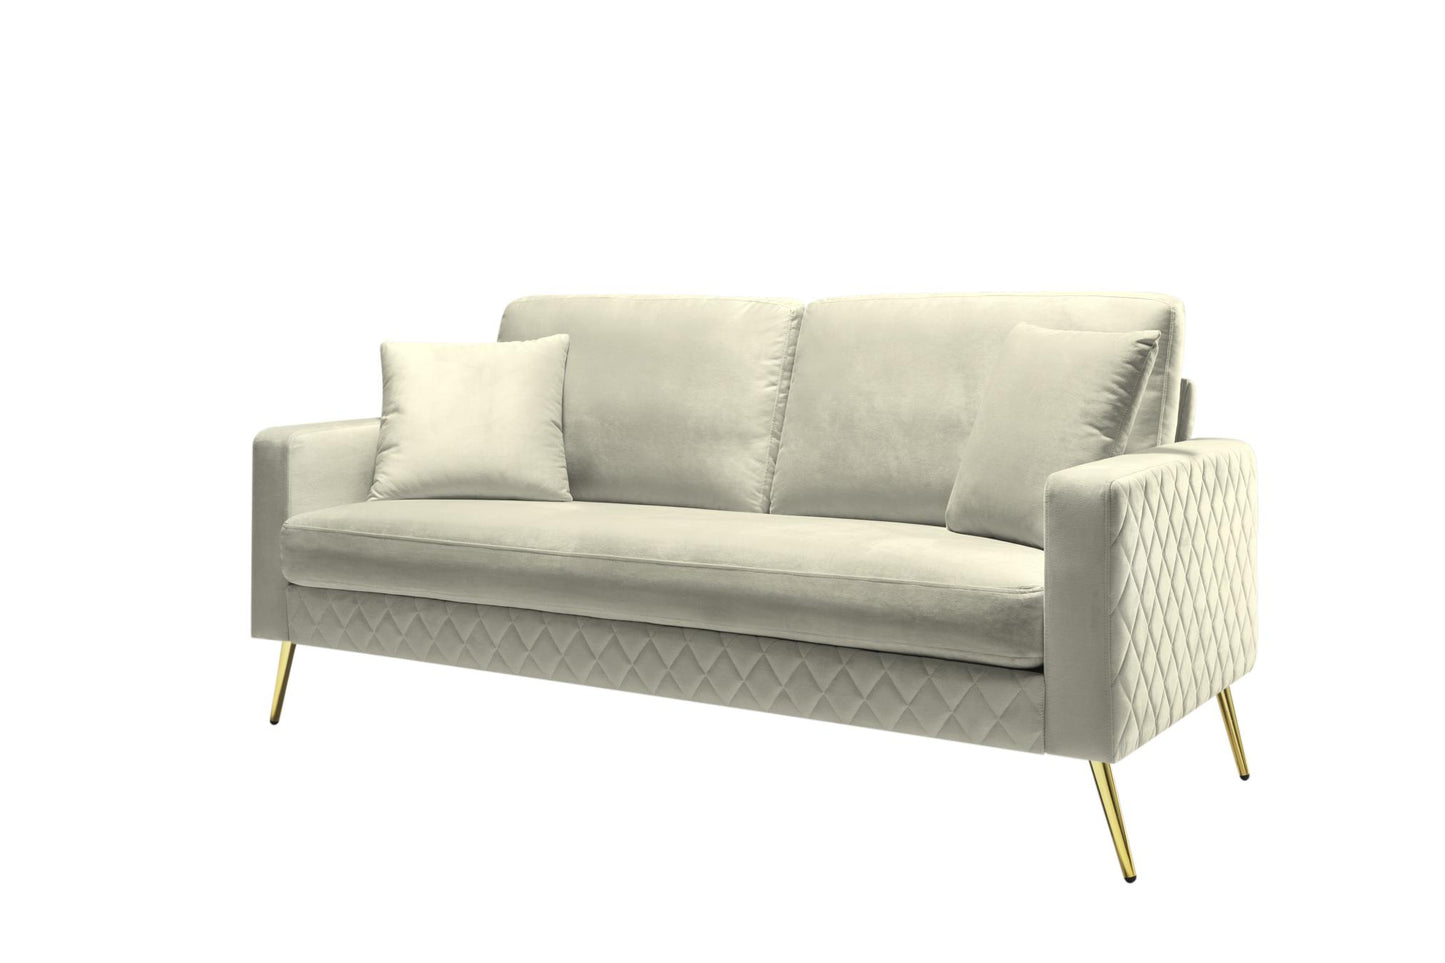 72.4” Square Arm Sofa